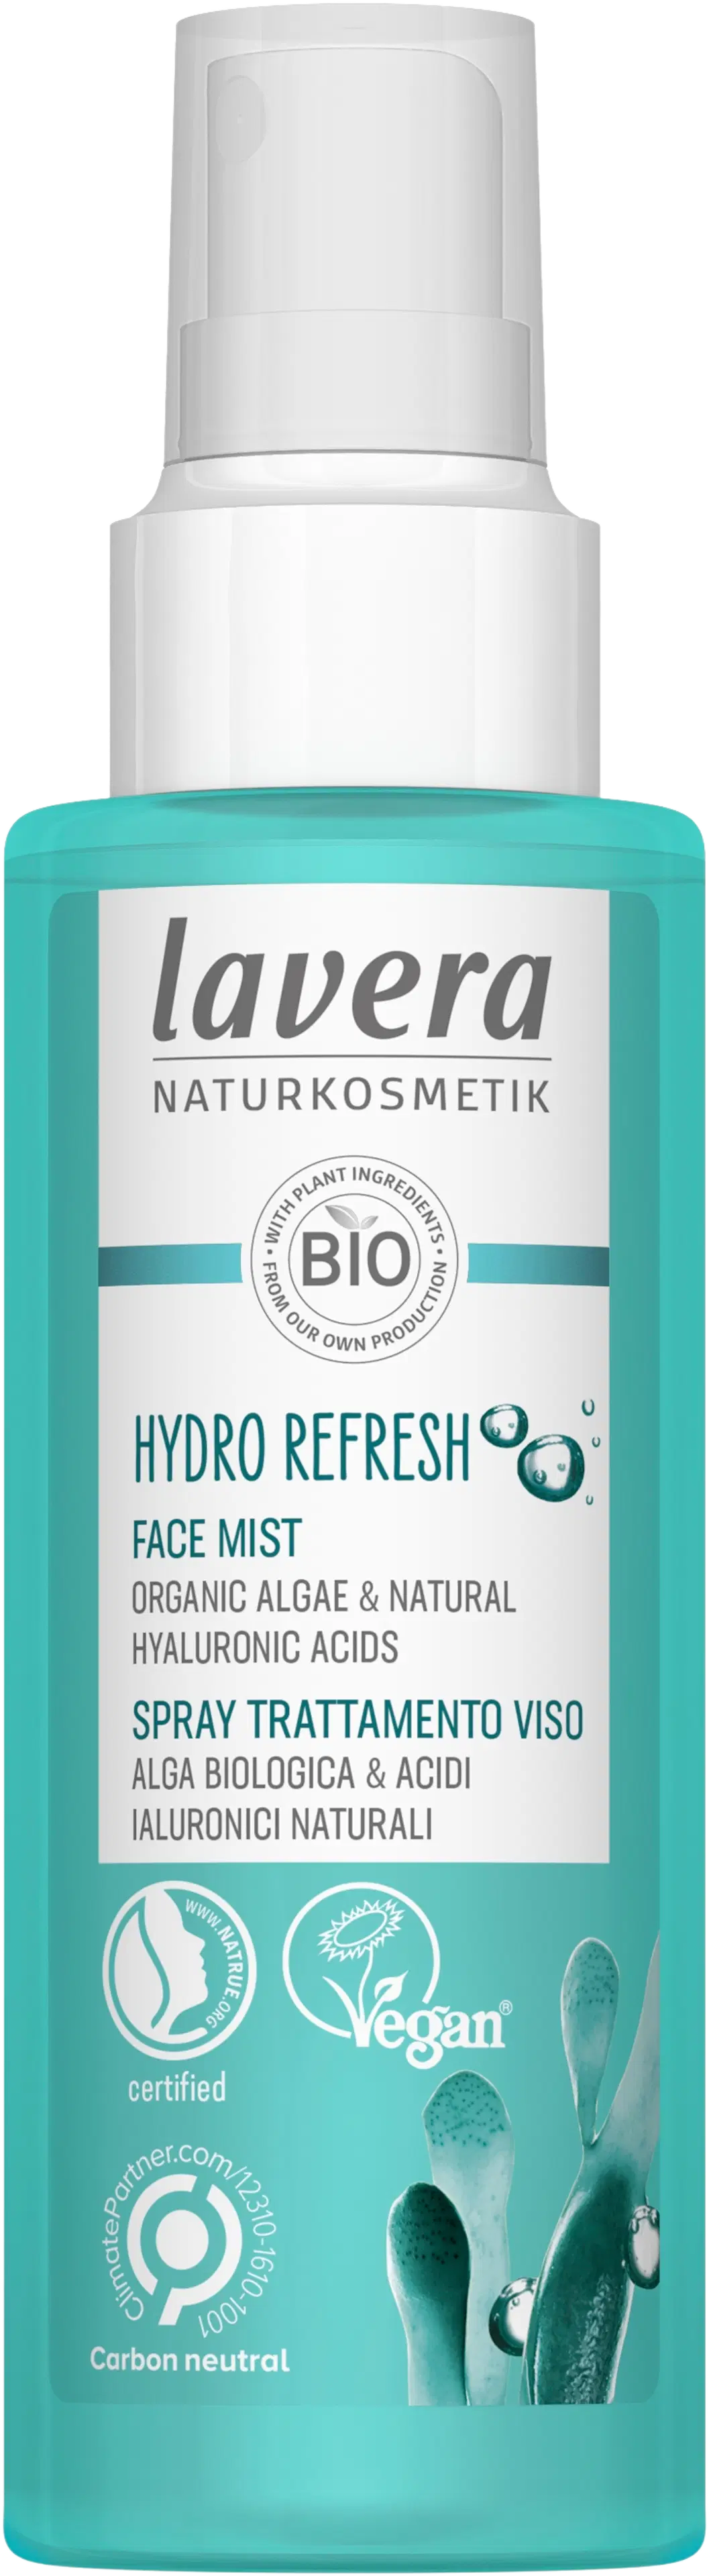 lavera Hydro Refresh Face Mist 100ml